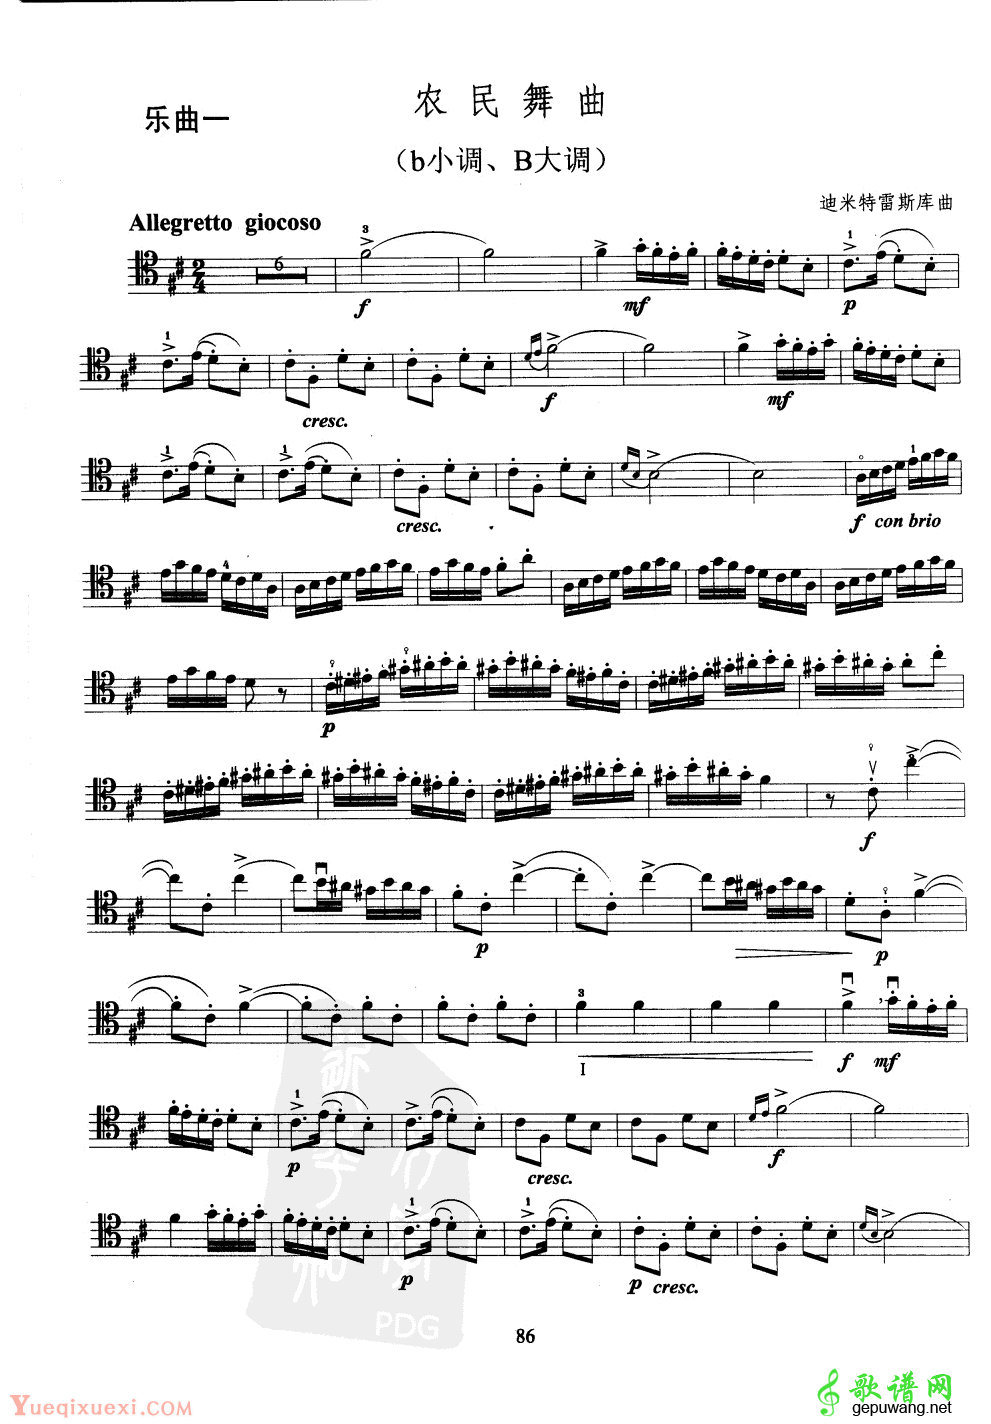 大提琴第九级乐曲练习谱